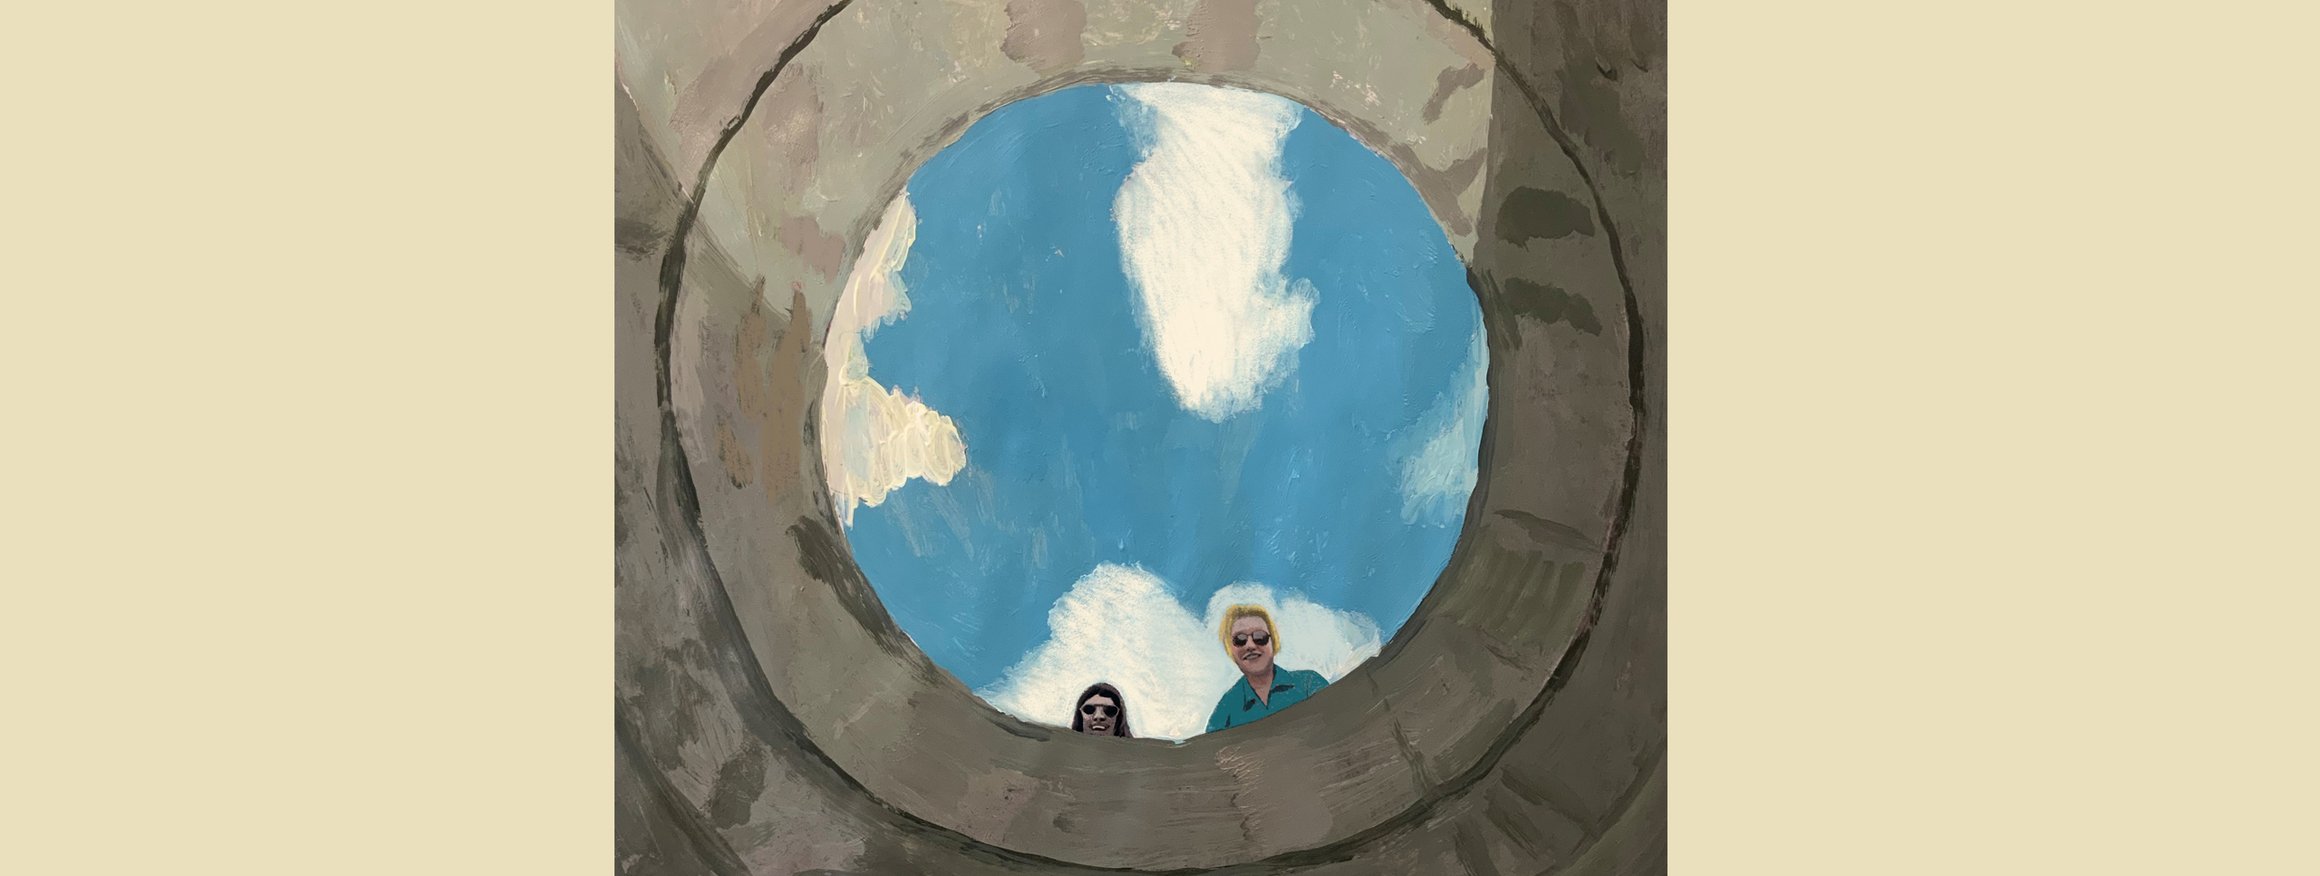 Die Illustration zeigt eine runde Öffnung in die zwei Personen hineinschauen, hinter ihnen sieht man den blauen Himmel mit weißen Wolken